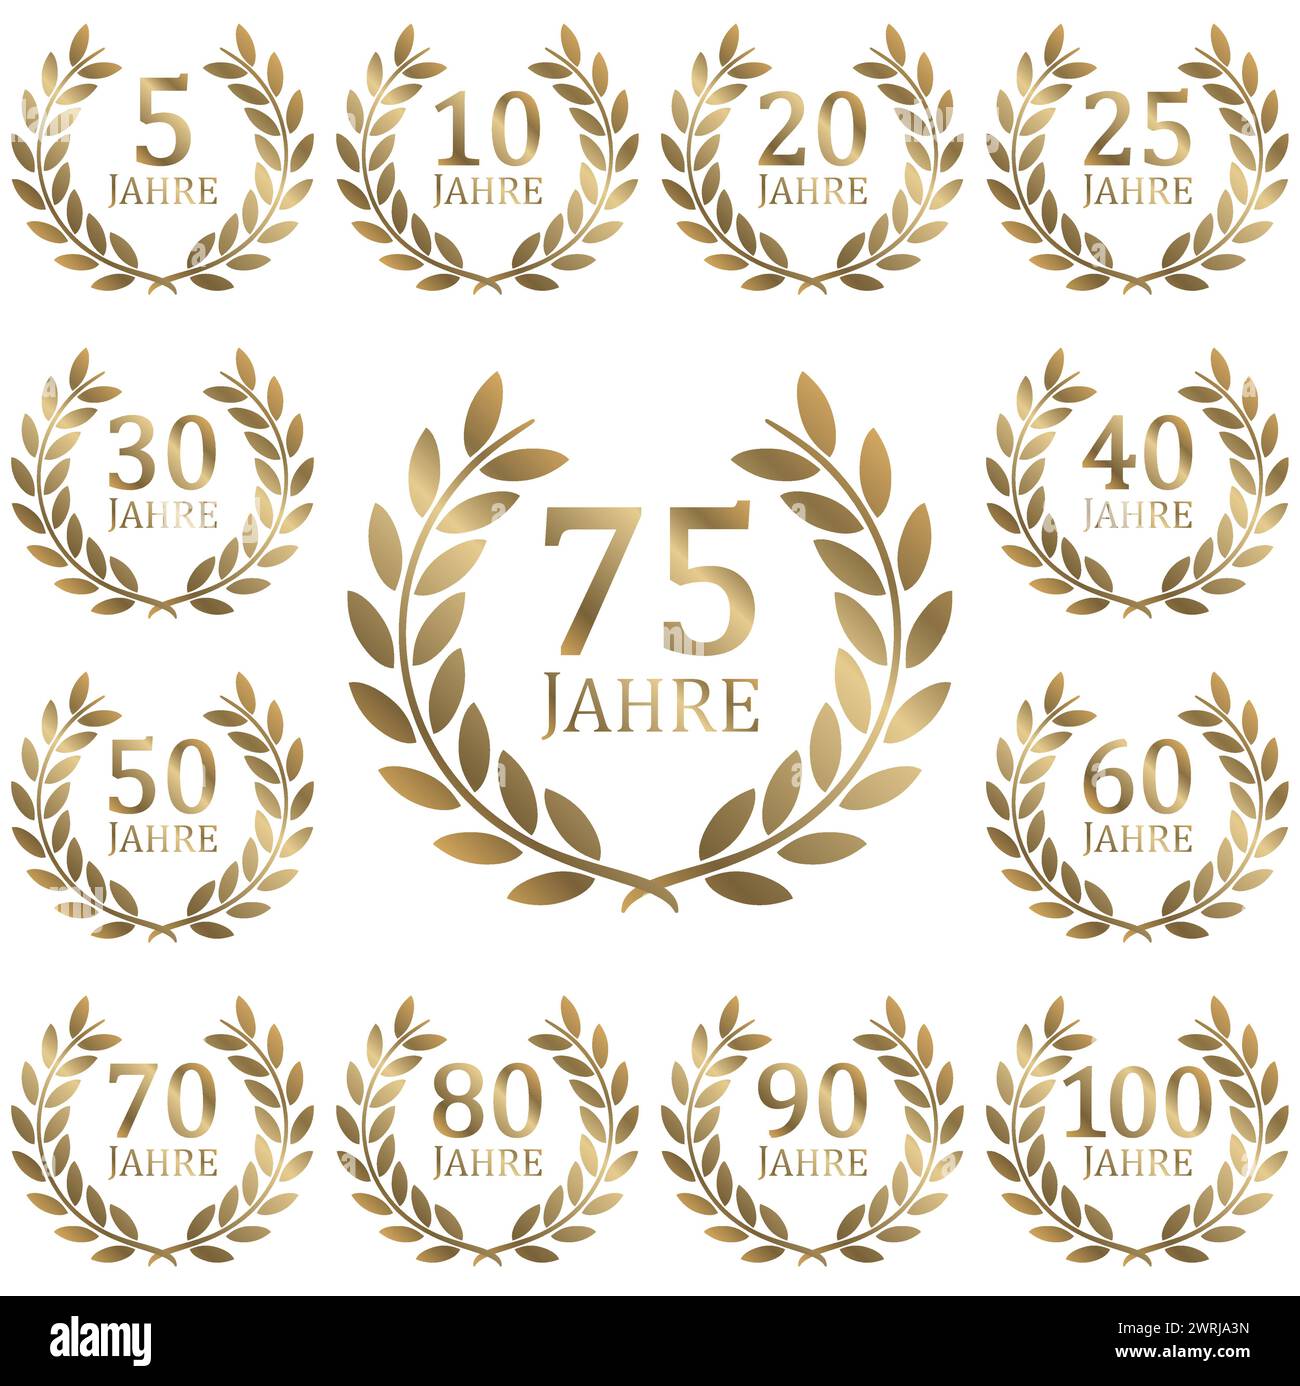 fichier vectoriel eps avec collection de couronne de laurier dorée sur fond blanc pour le succès ou le jubilé ferme avec texte de 5 à 100 ans (texte allemand) Illustration de Vecteur